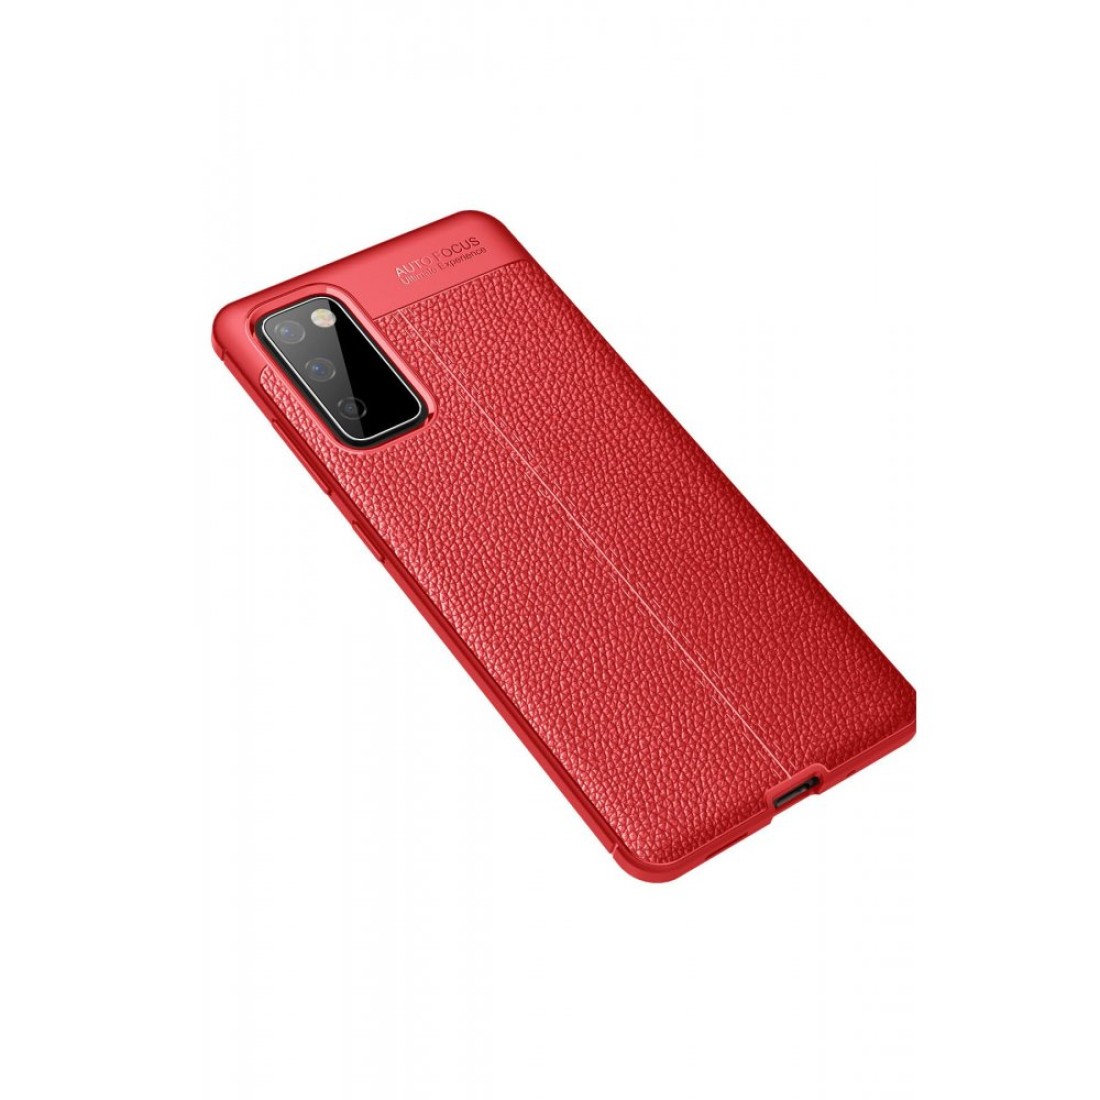 Samsung Galaxy S20 FE Kılıf Focus Derili Silikon - Kırmızı